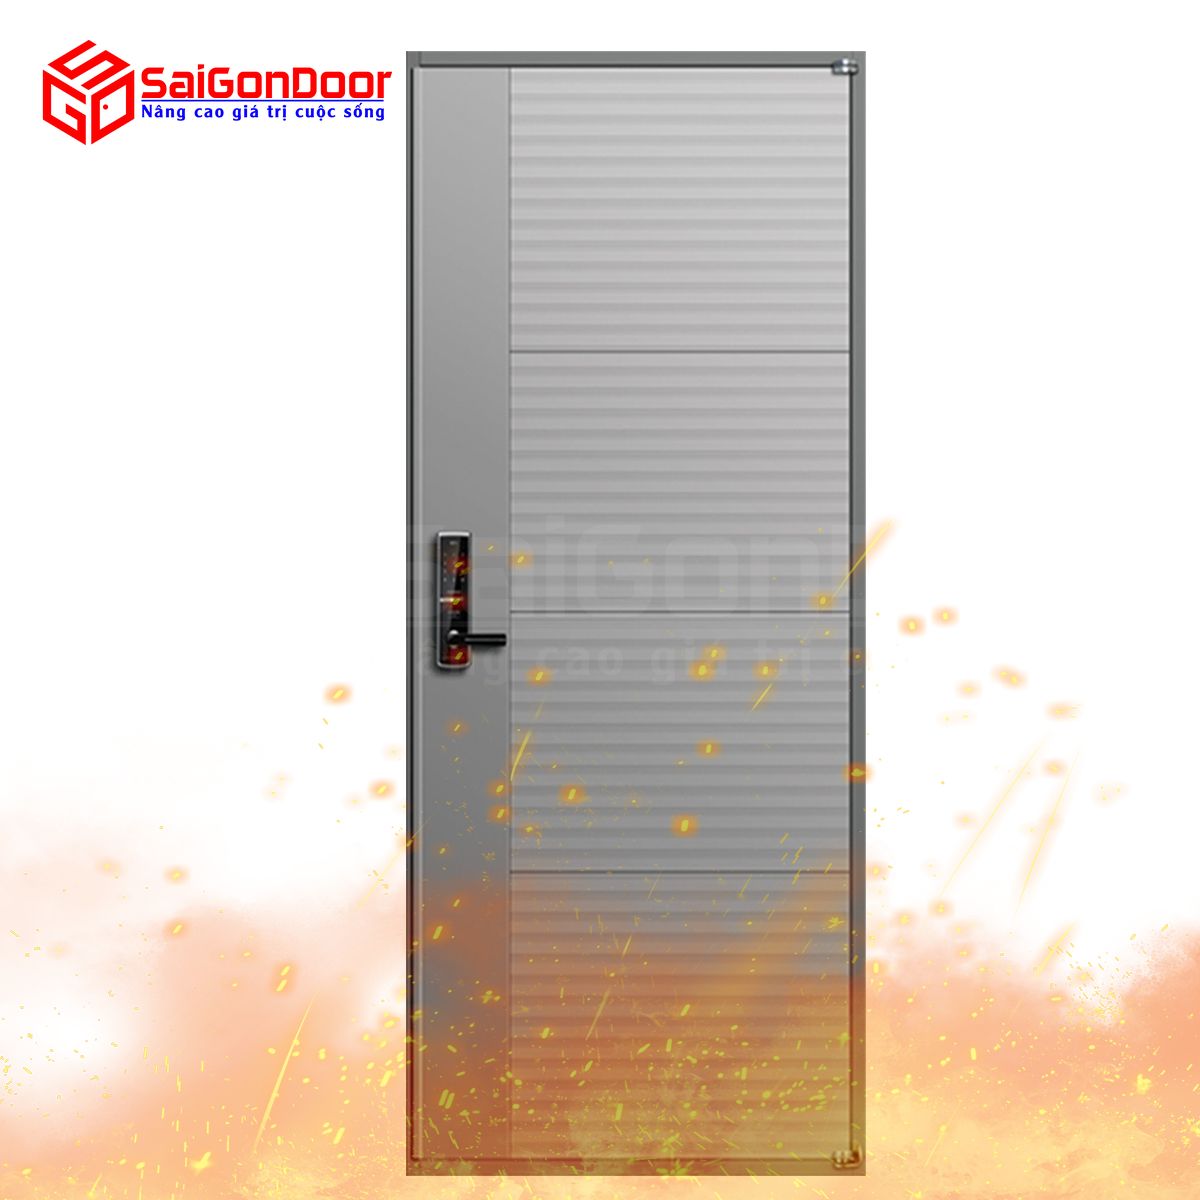 Tuỳ thuộc vào vị trí mà lựa chọn mẫu cửa chống cháy với thời gian ngăn cháy khác nhau phù hợp nhất